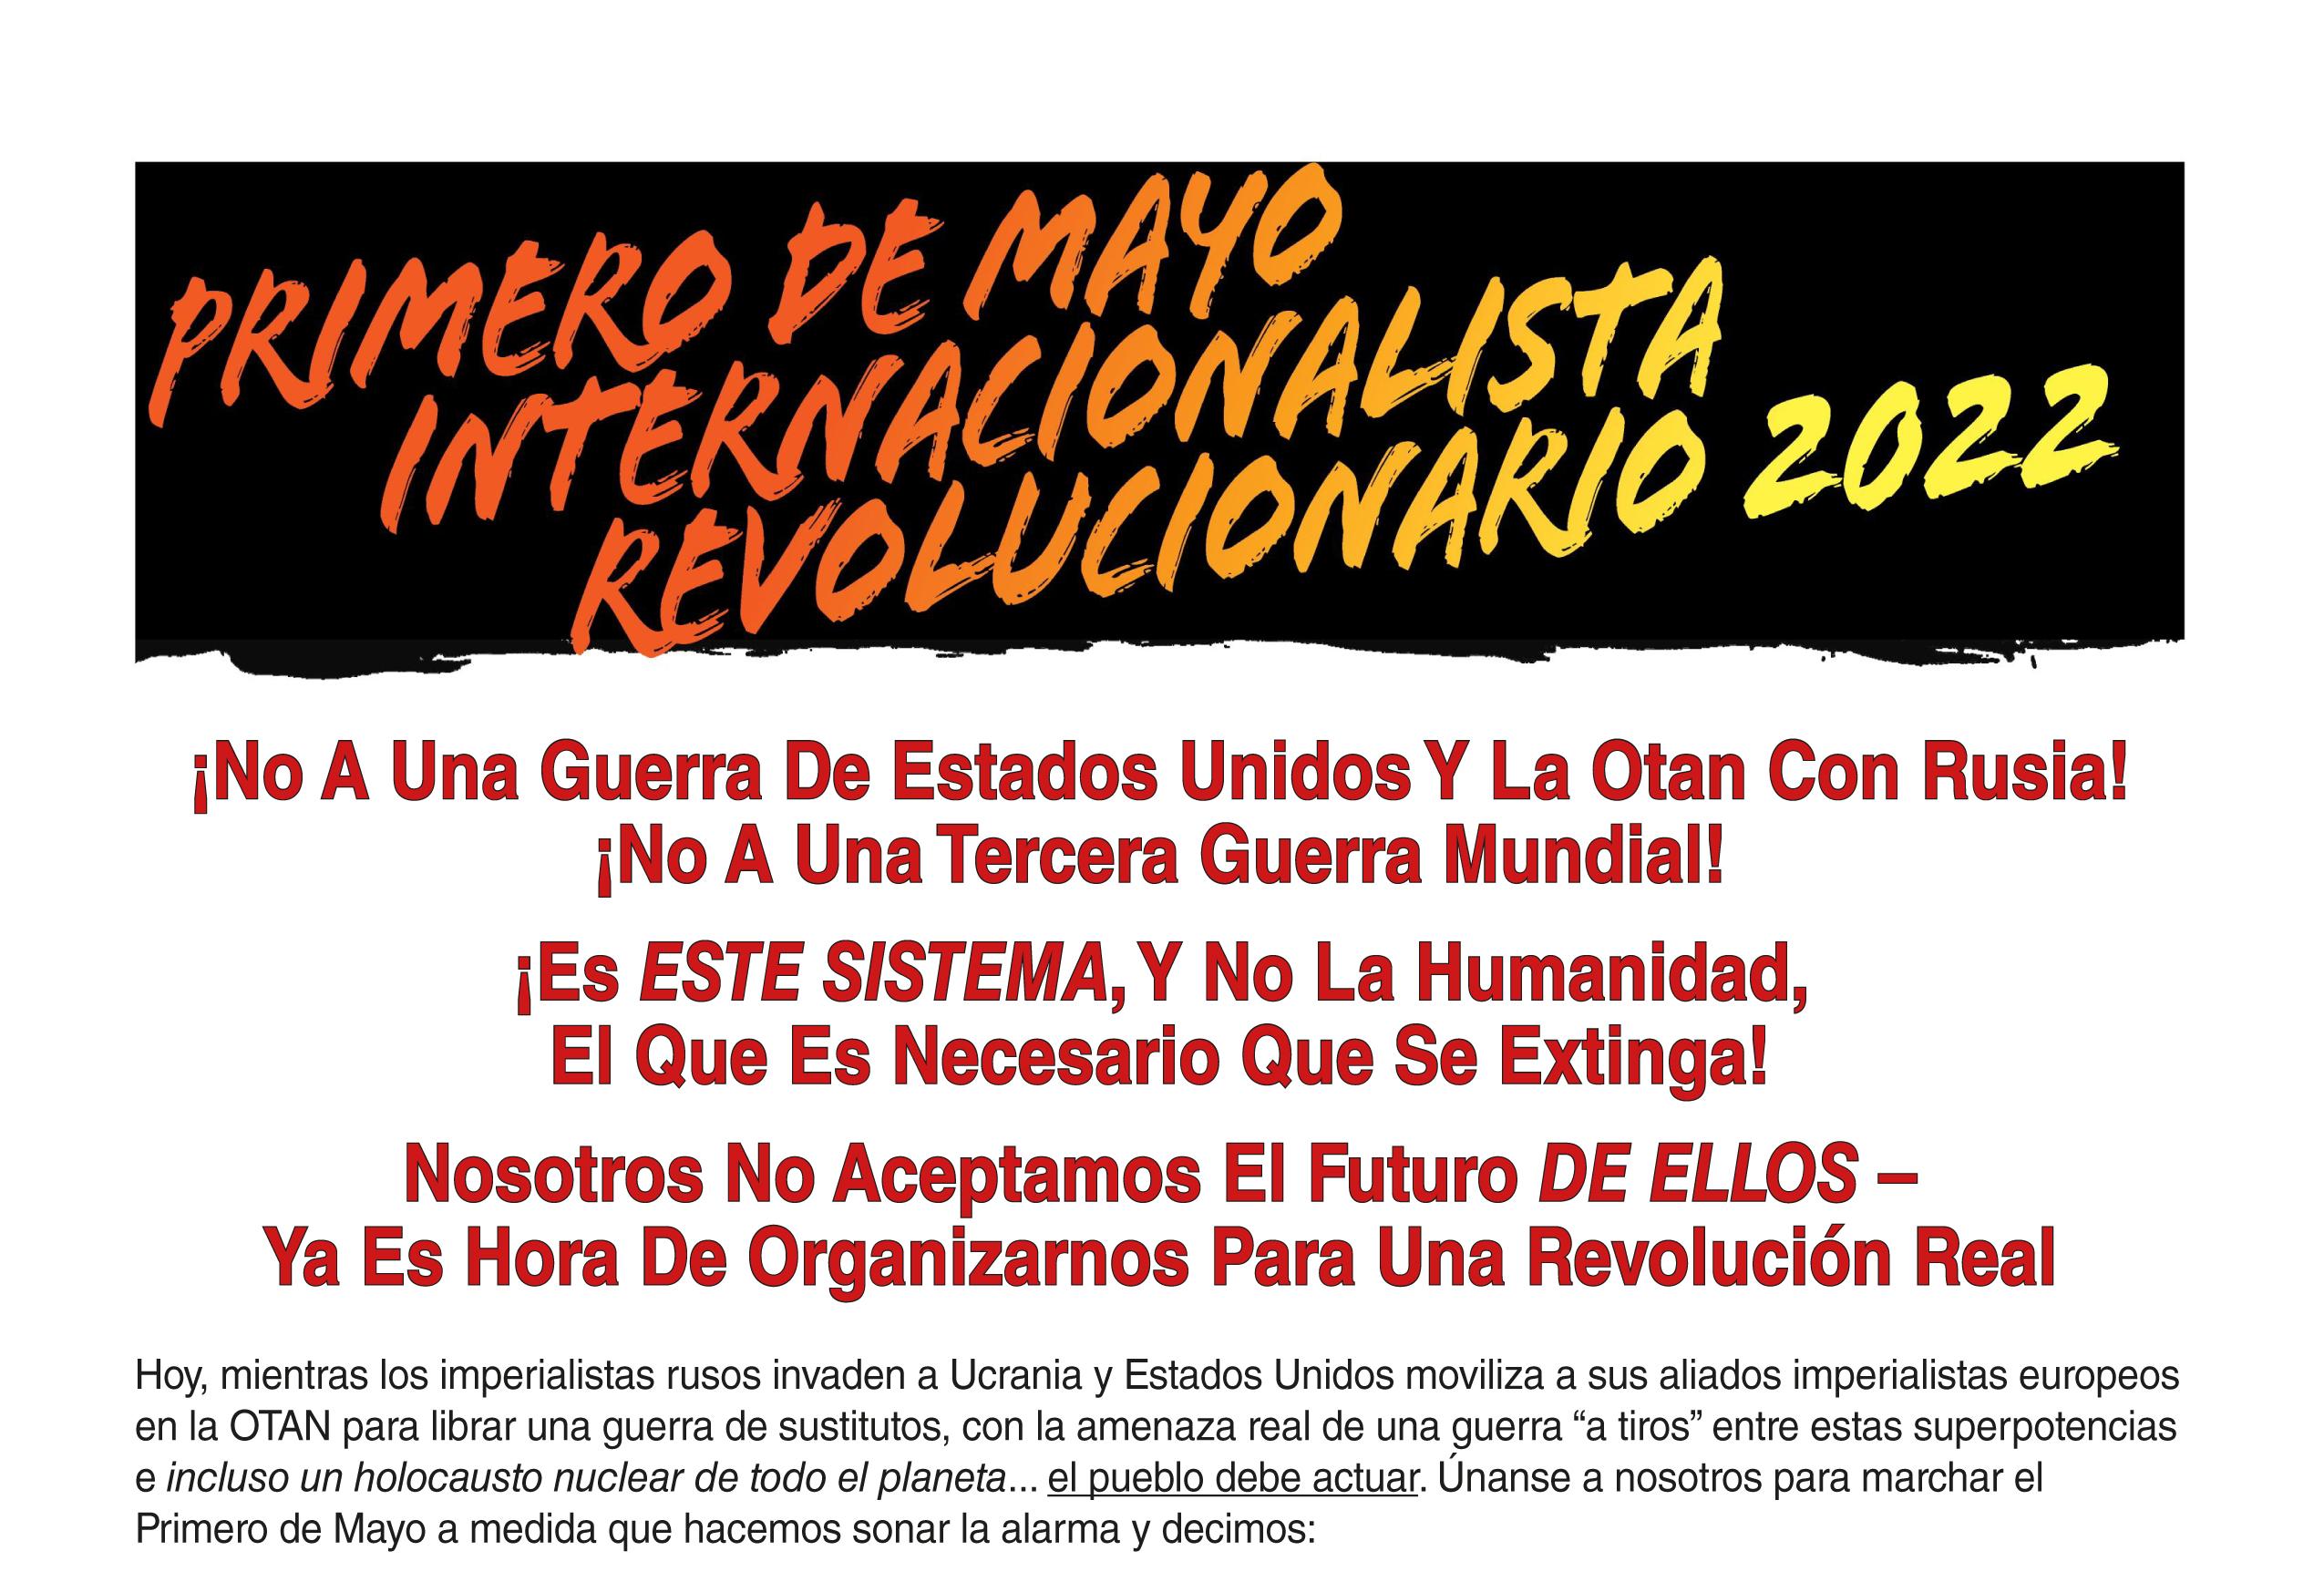 Grupo del Manifiesto Comunista Revolucionario Primero de Mayo 2022